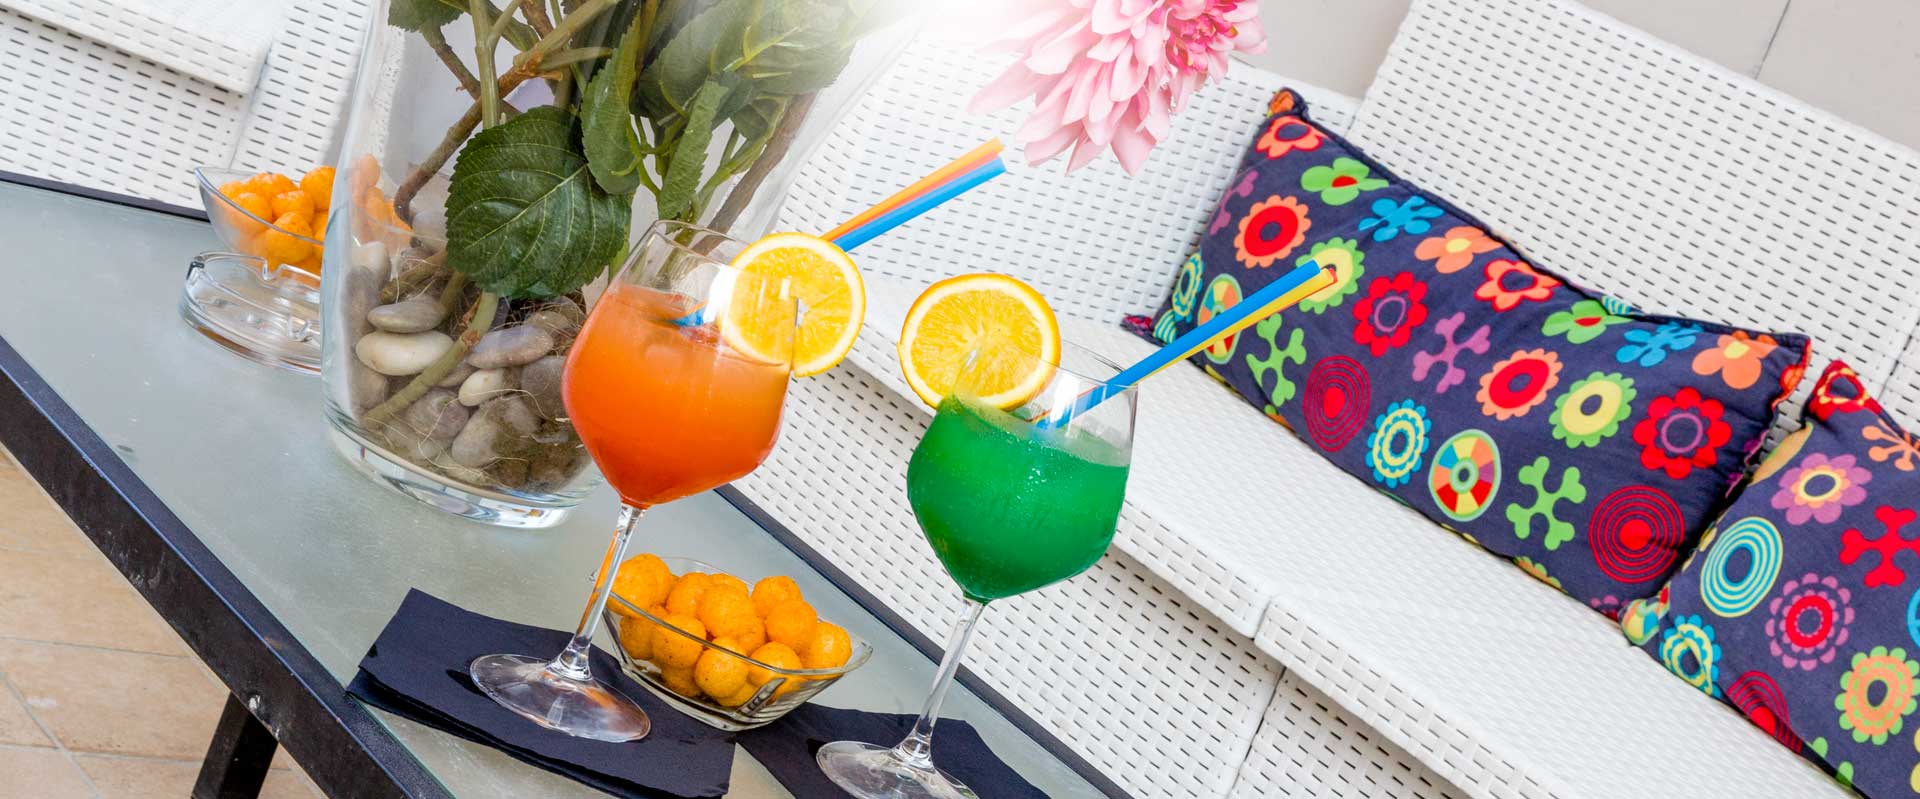 Fotografia di due cocktails, uno arancione e uno verde, preparati dal bar dell'hotel star di Cattolica